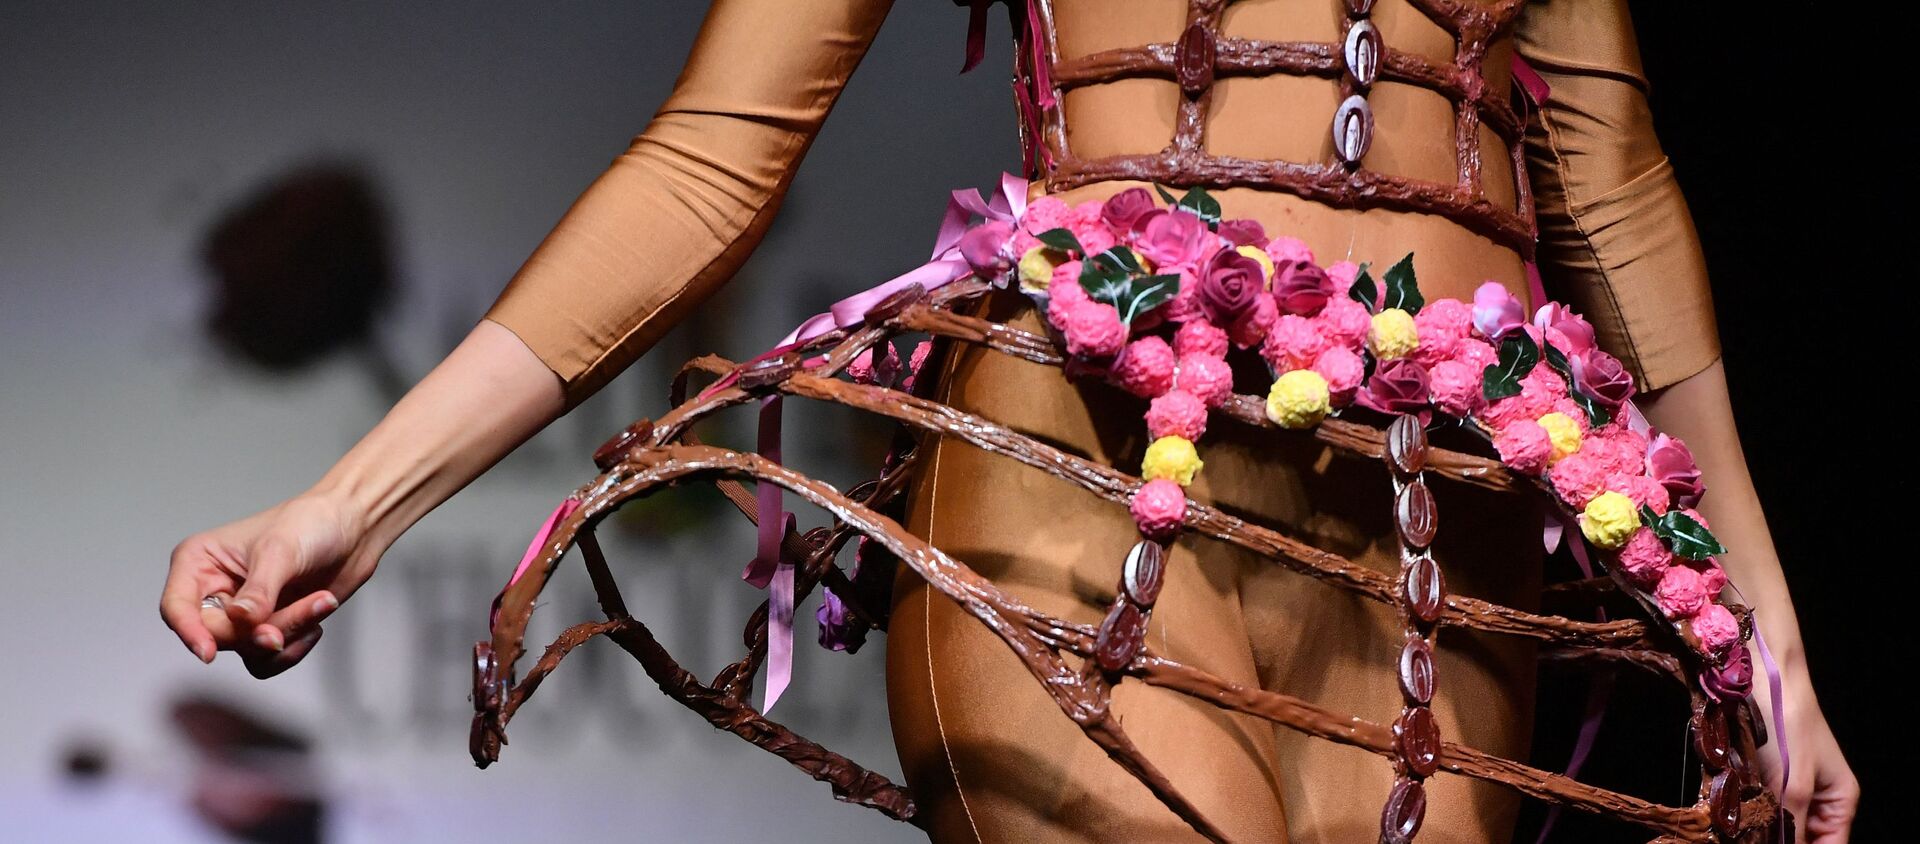 Модель в платье из шоколада на показе в рамках 6-й шоколадной ярмарки в Брюсселе в 2019 году - Sputnik Кыргызстан, 1920, 07.07.2021